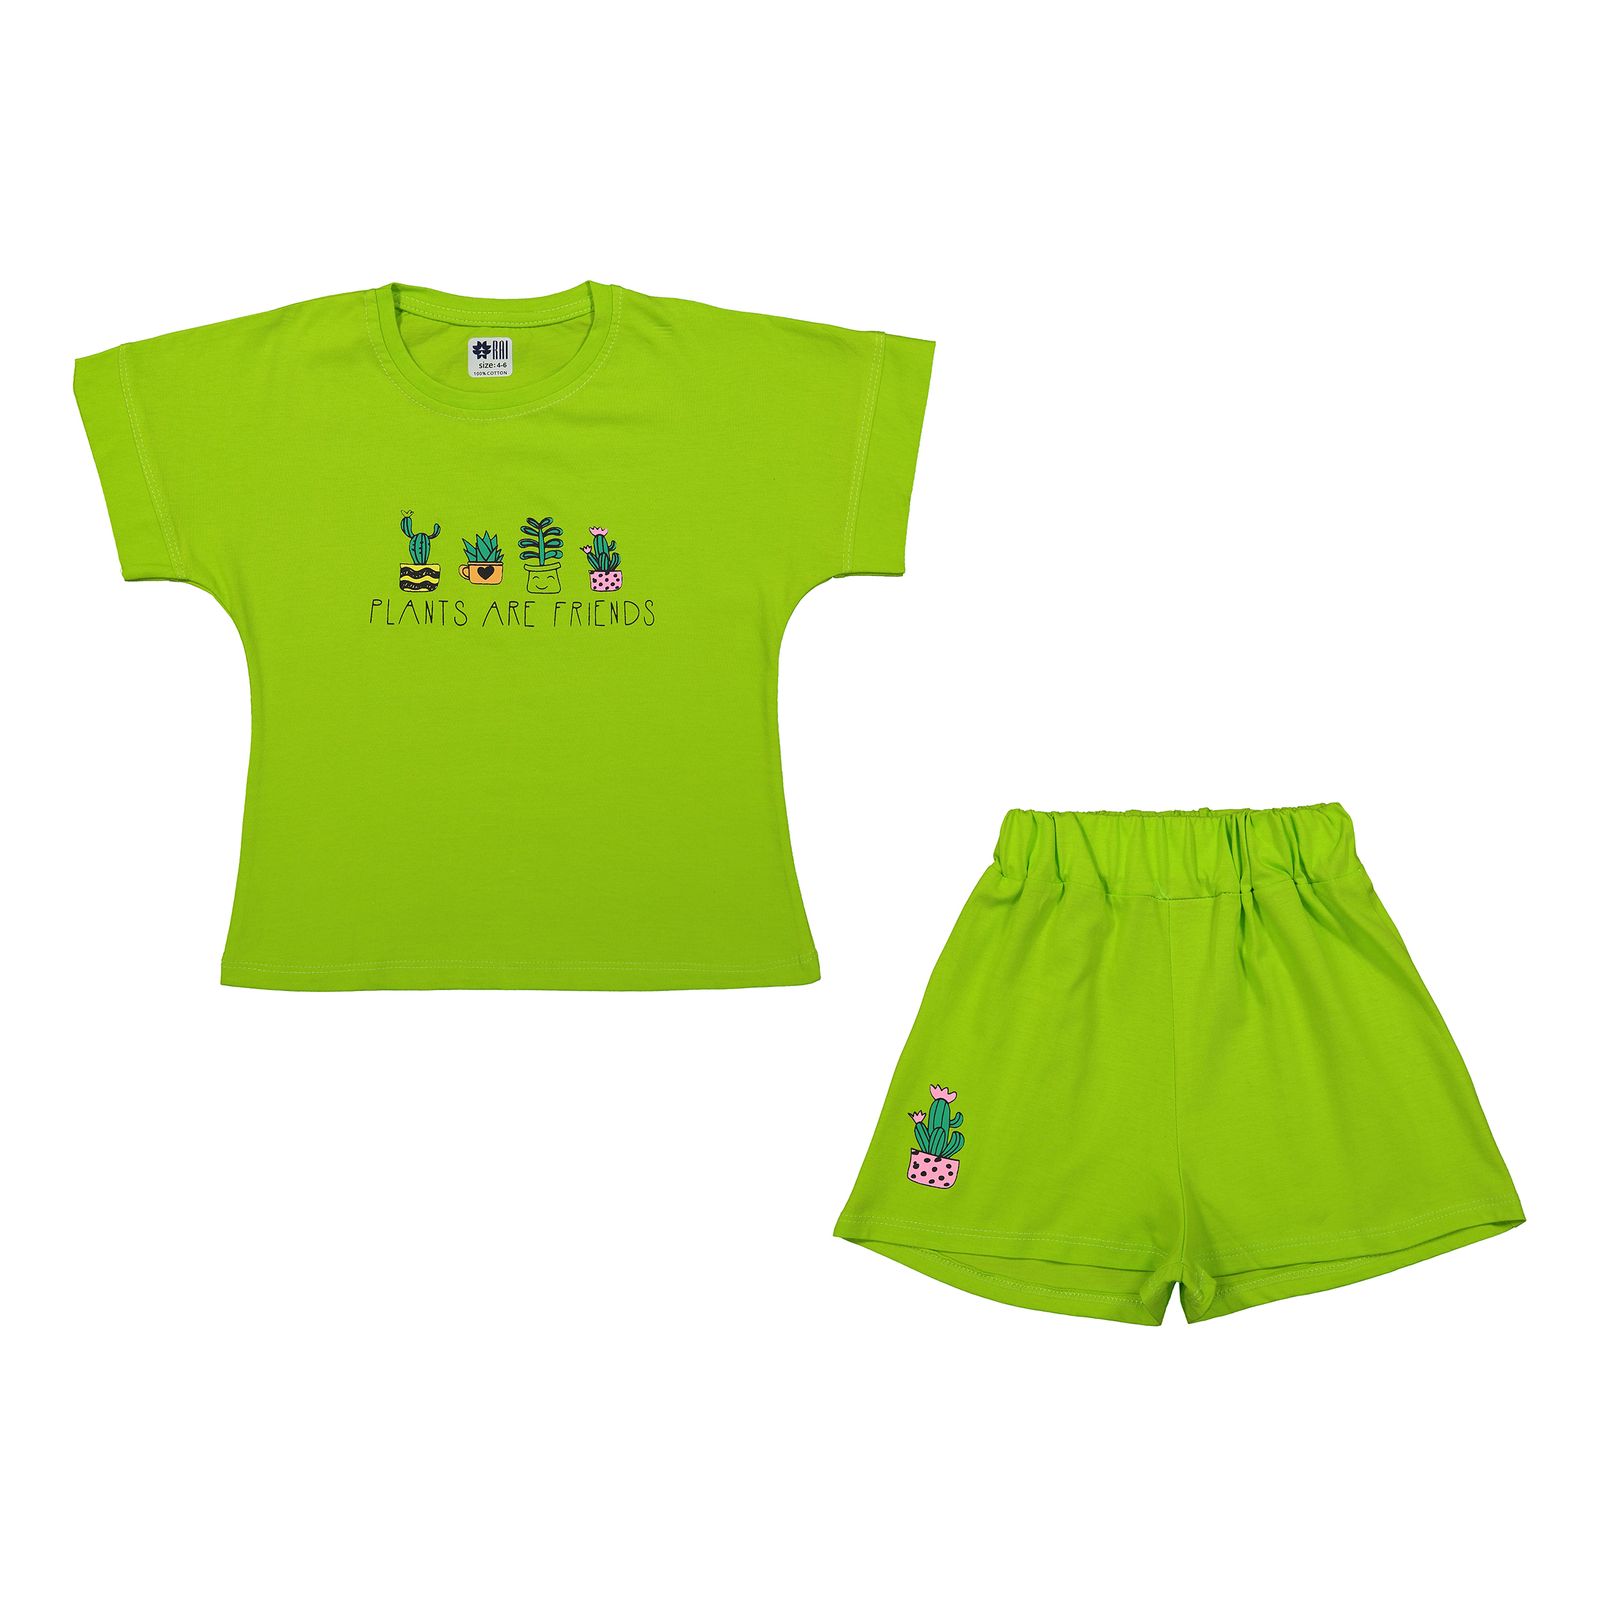 ست تی شرت آستین کوتاه و شلوارک دخترانه مادر مدل گاردن کد 92-43 رنگ سبز -  - 1